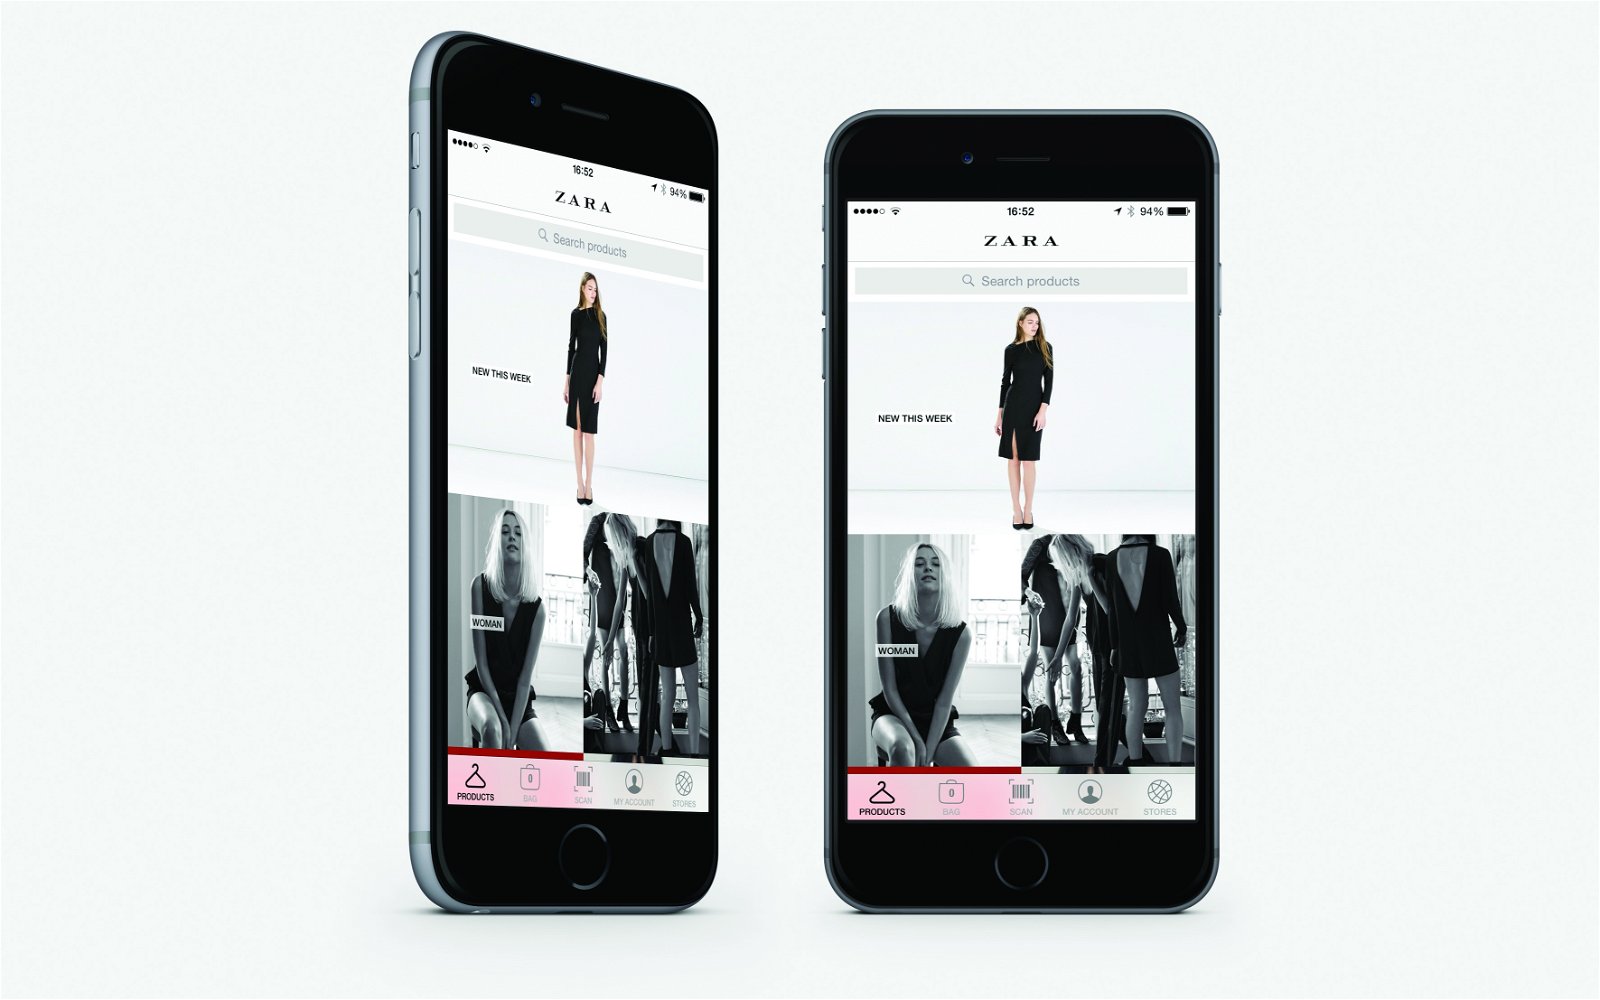 Móvil con la app de Zara abierta